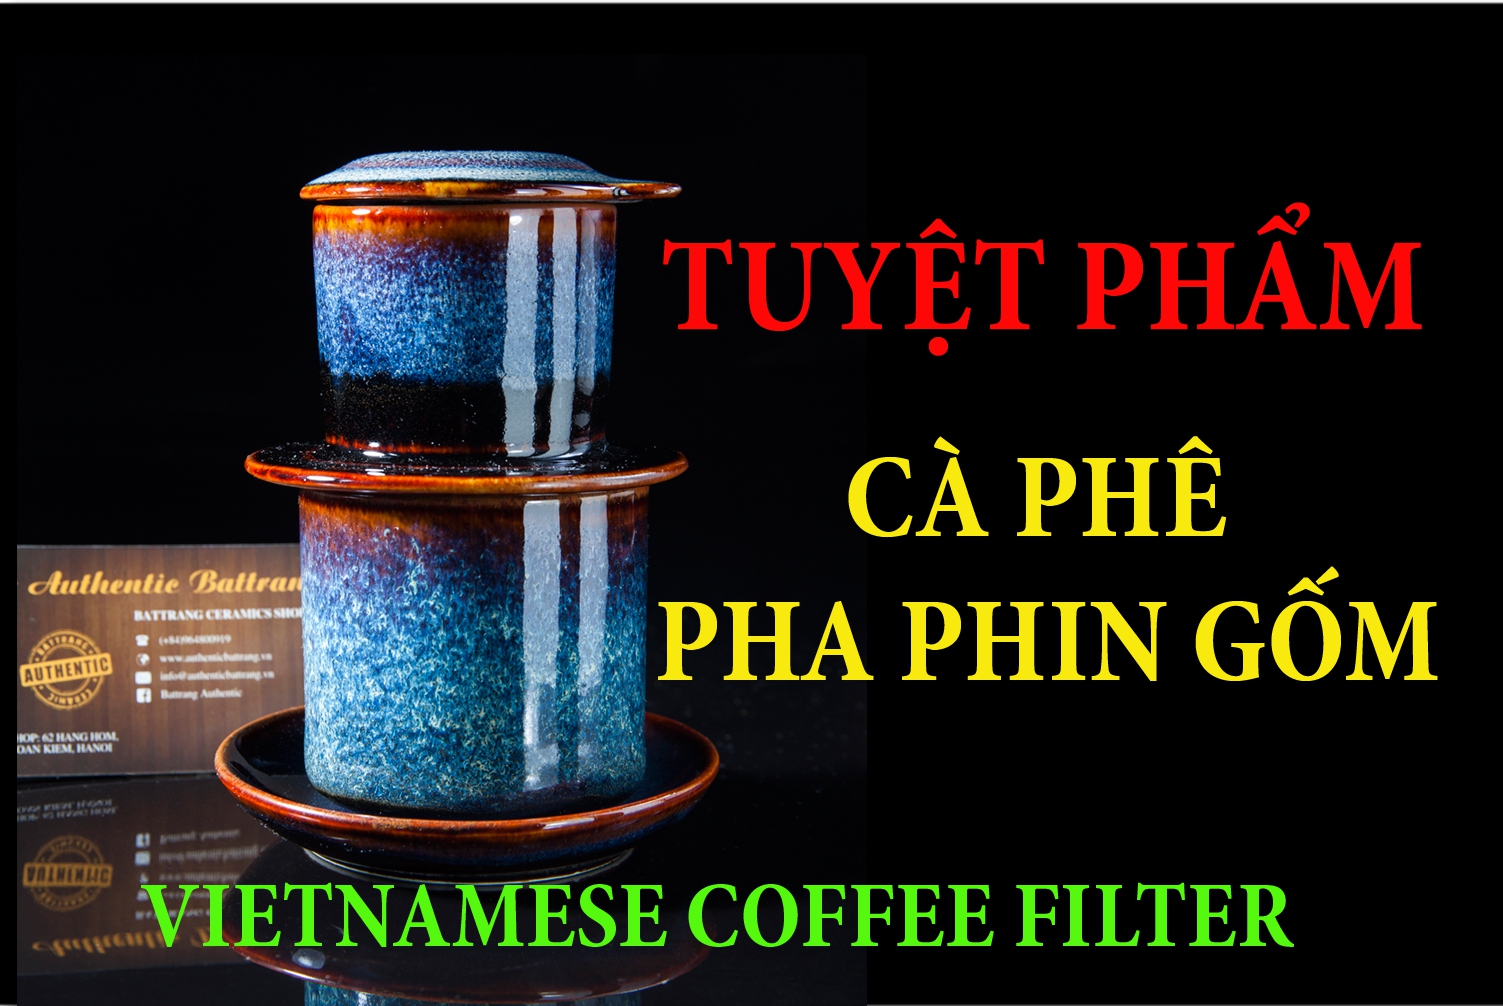 TUYỆT PHẨM CÀ PHÊ PHA PHIN GỐM - Hướng dẫn Cách pha cà phê phin gốm ngon tuyệt - Vietnamese coffee